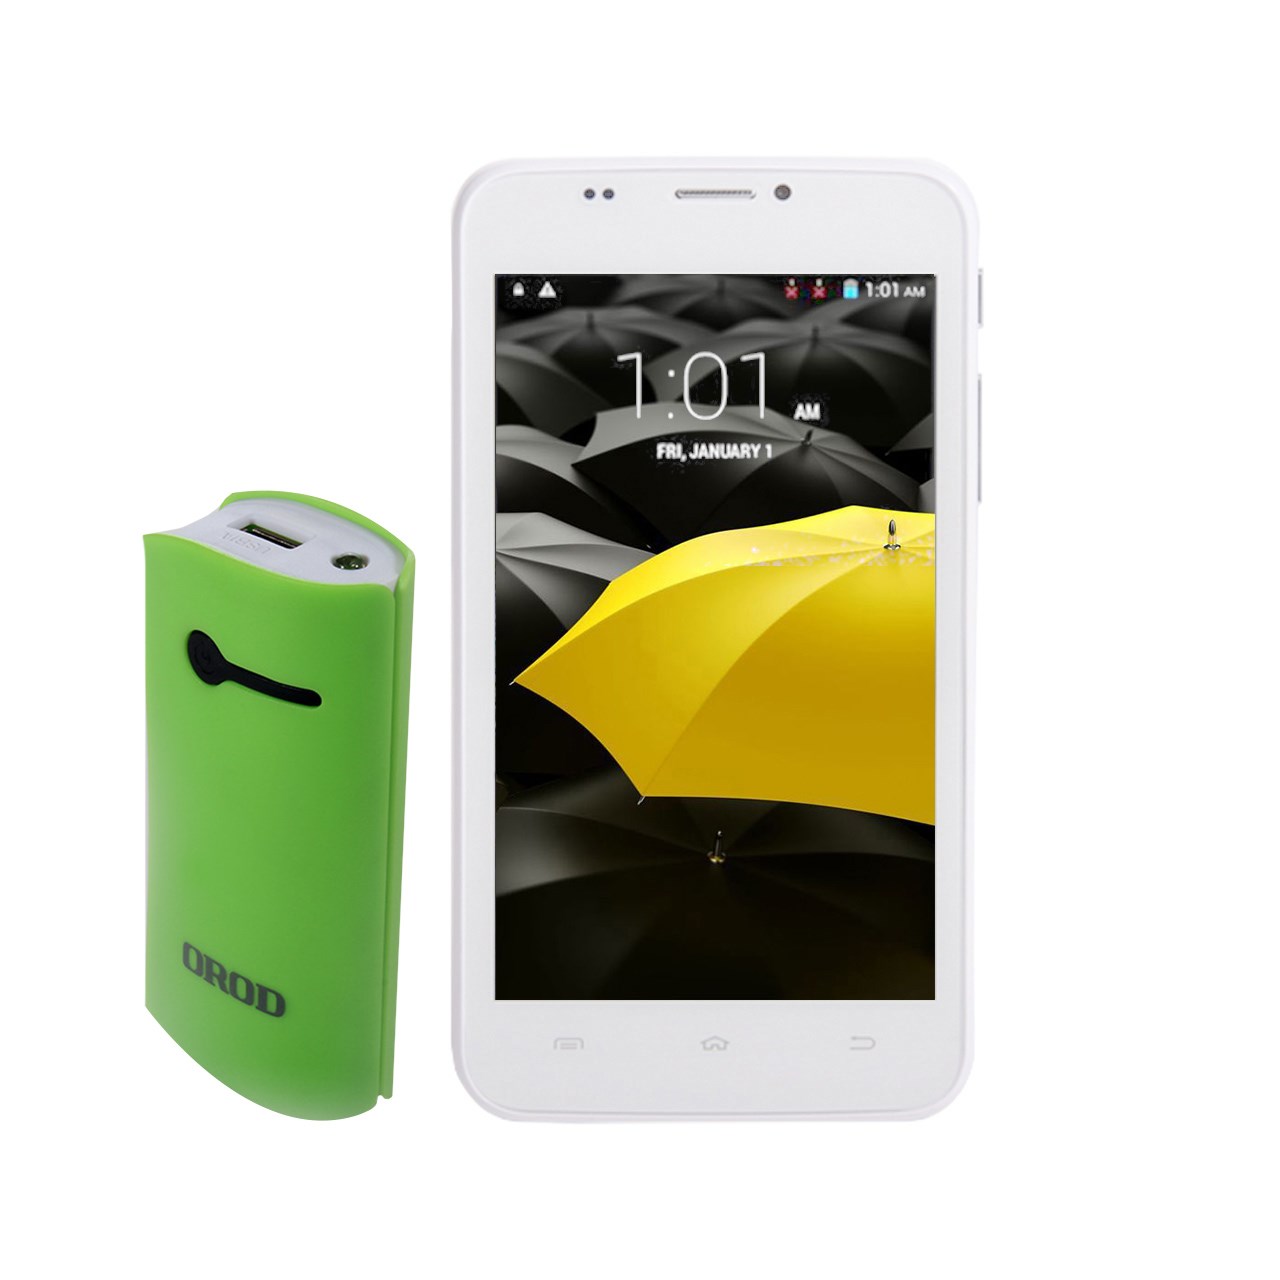 گوشی موبایل کن شین دا مدل Delta دو سیم کارت به همراه یک شارژر همراه و یک کاور